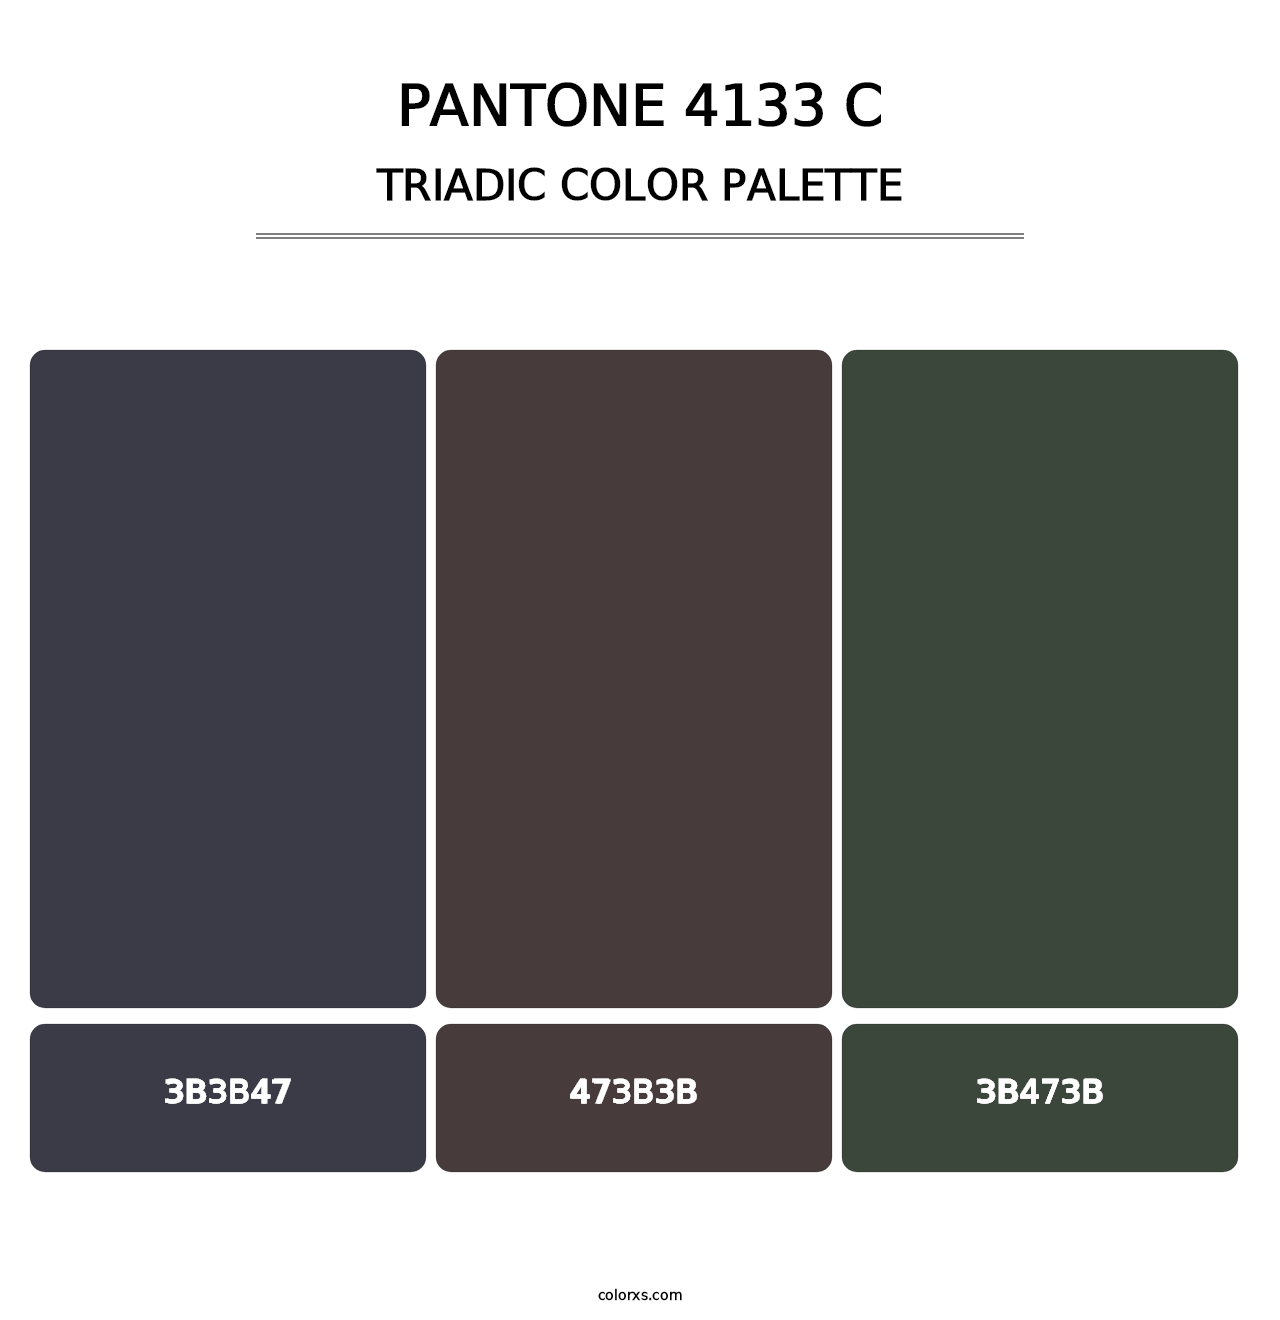 PANTONE 4133 C - Triadic Color Palette